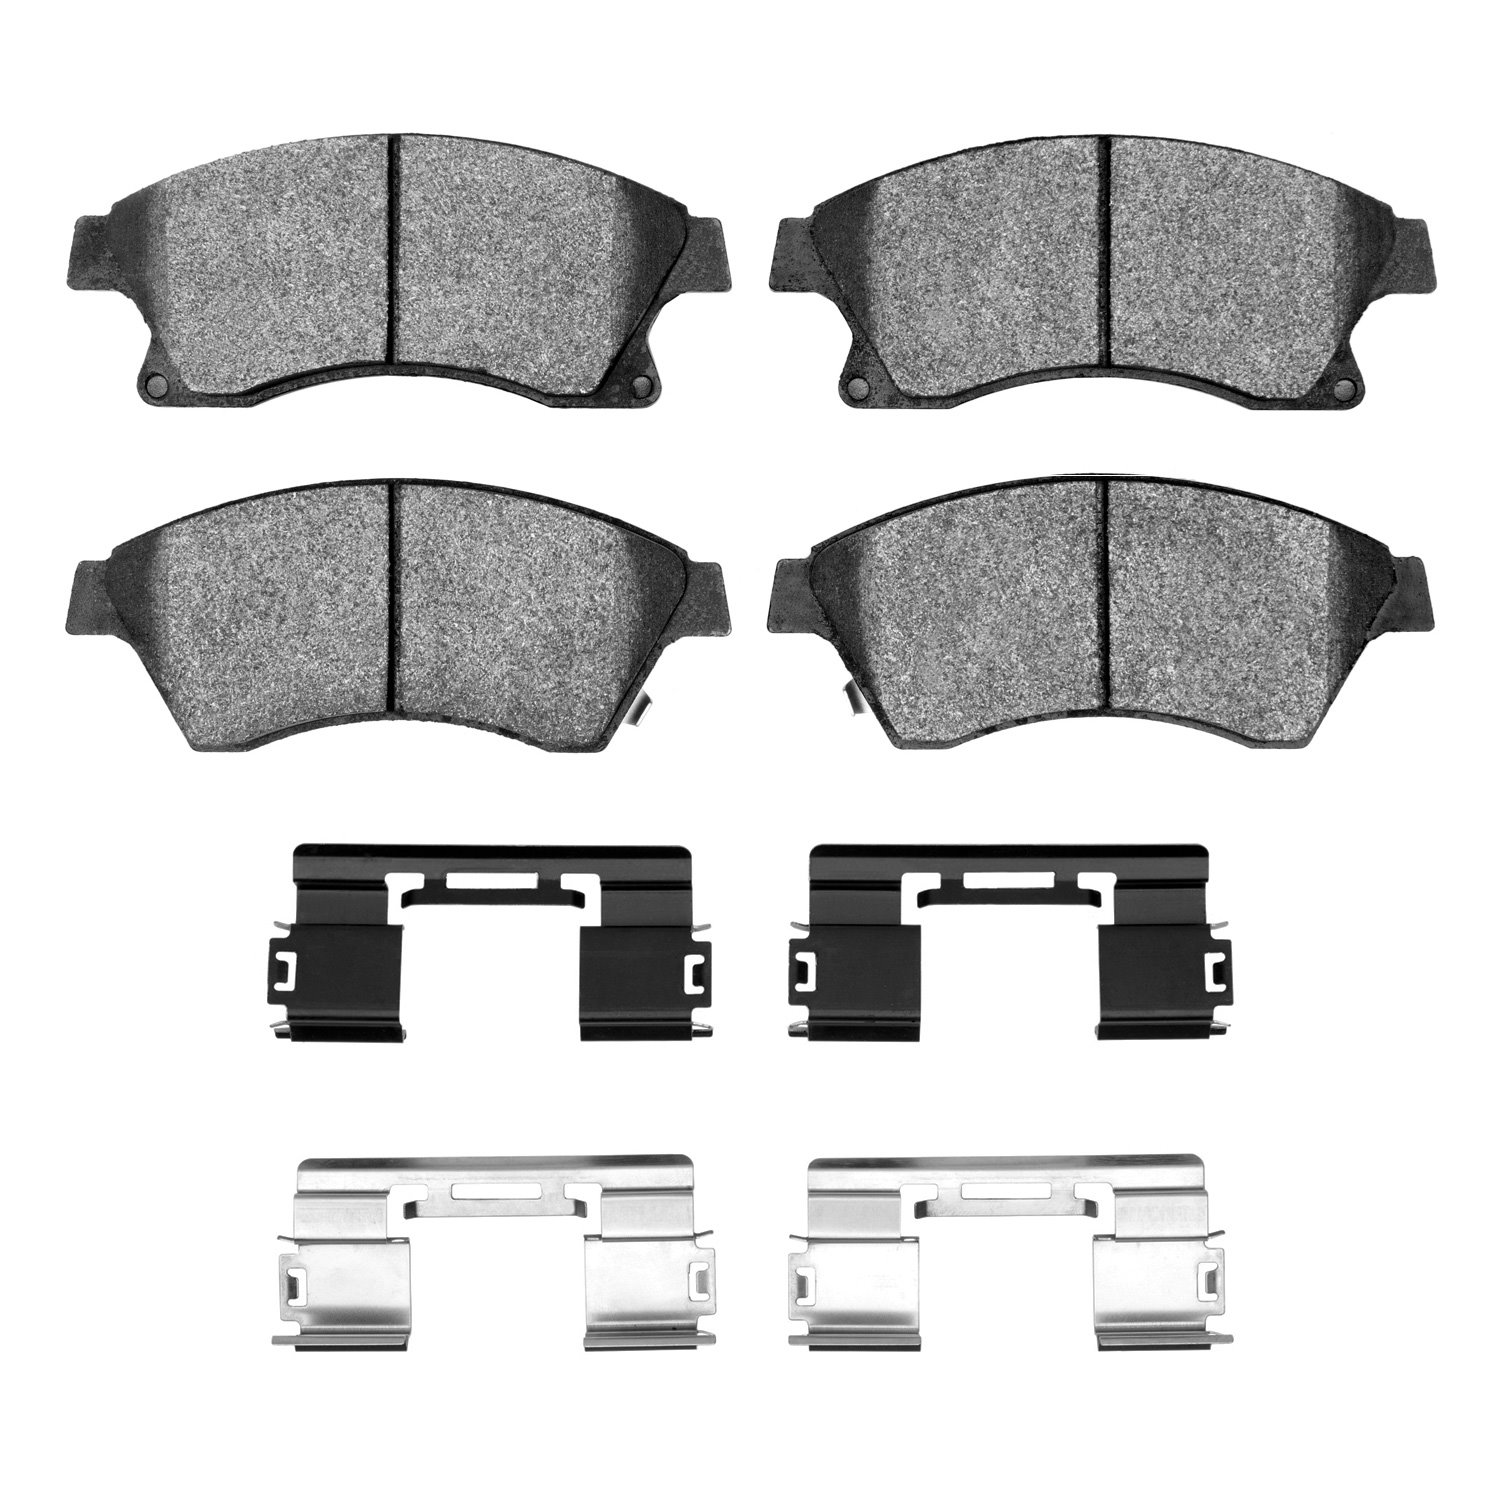 1311-1522-01 3000-Series Semi-Metallic Brake Pads & Hardware Kit, 2011-2017 GM, Position: Front